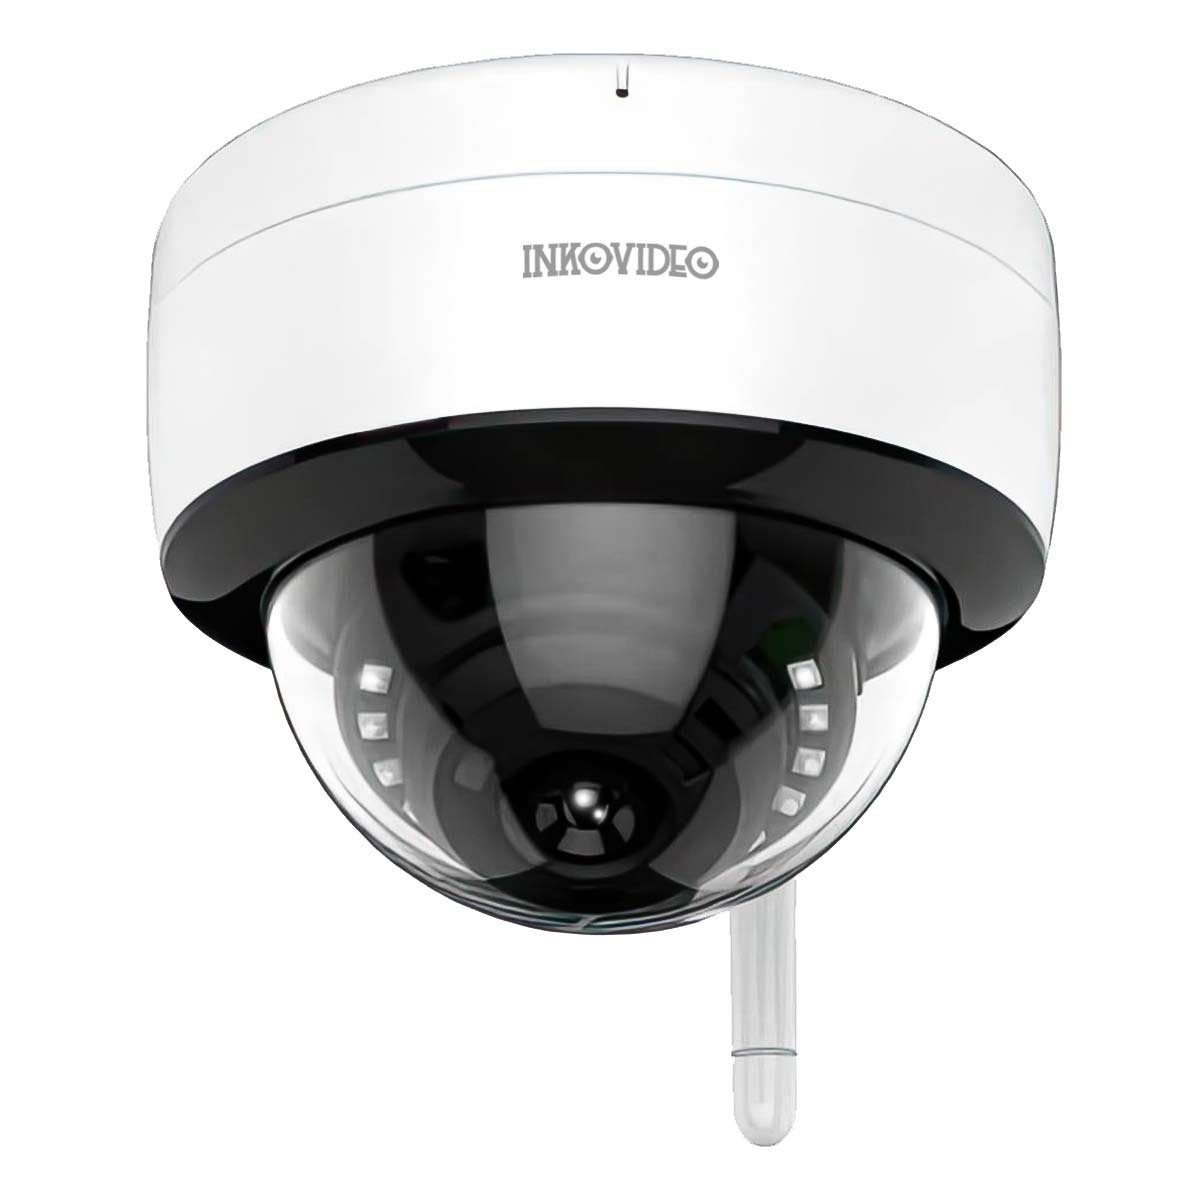 INKOVIDEO INKO-TY803 4 MP WLAN Dome Überwachungskamera (Schnelle Verbindung durch QR-Code-Scan)